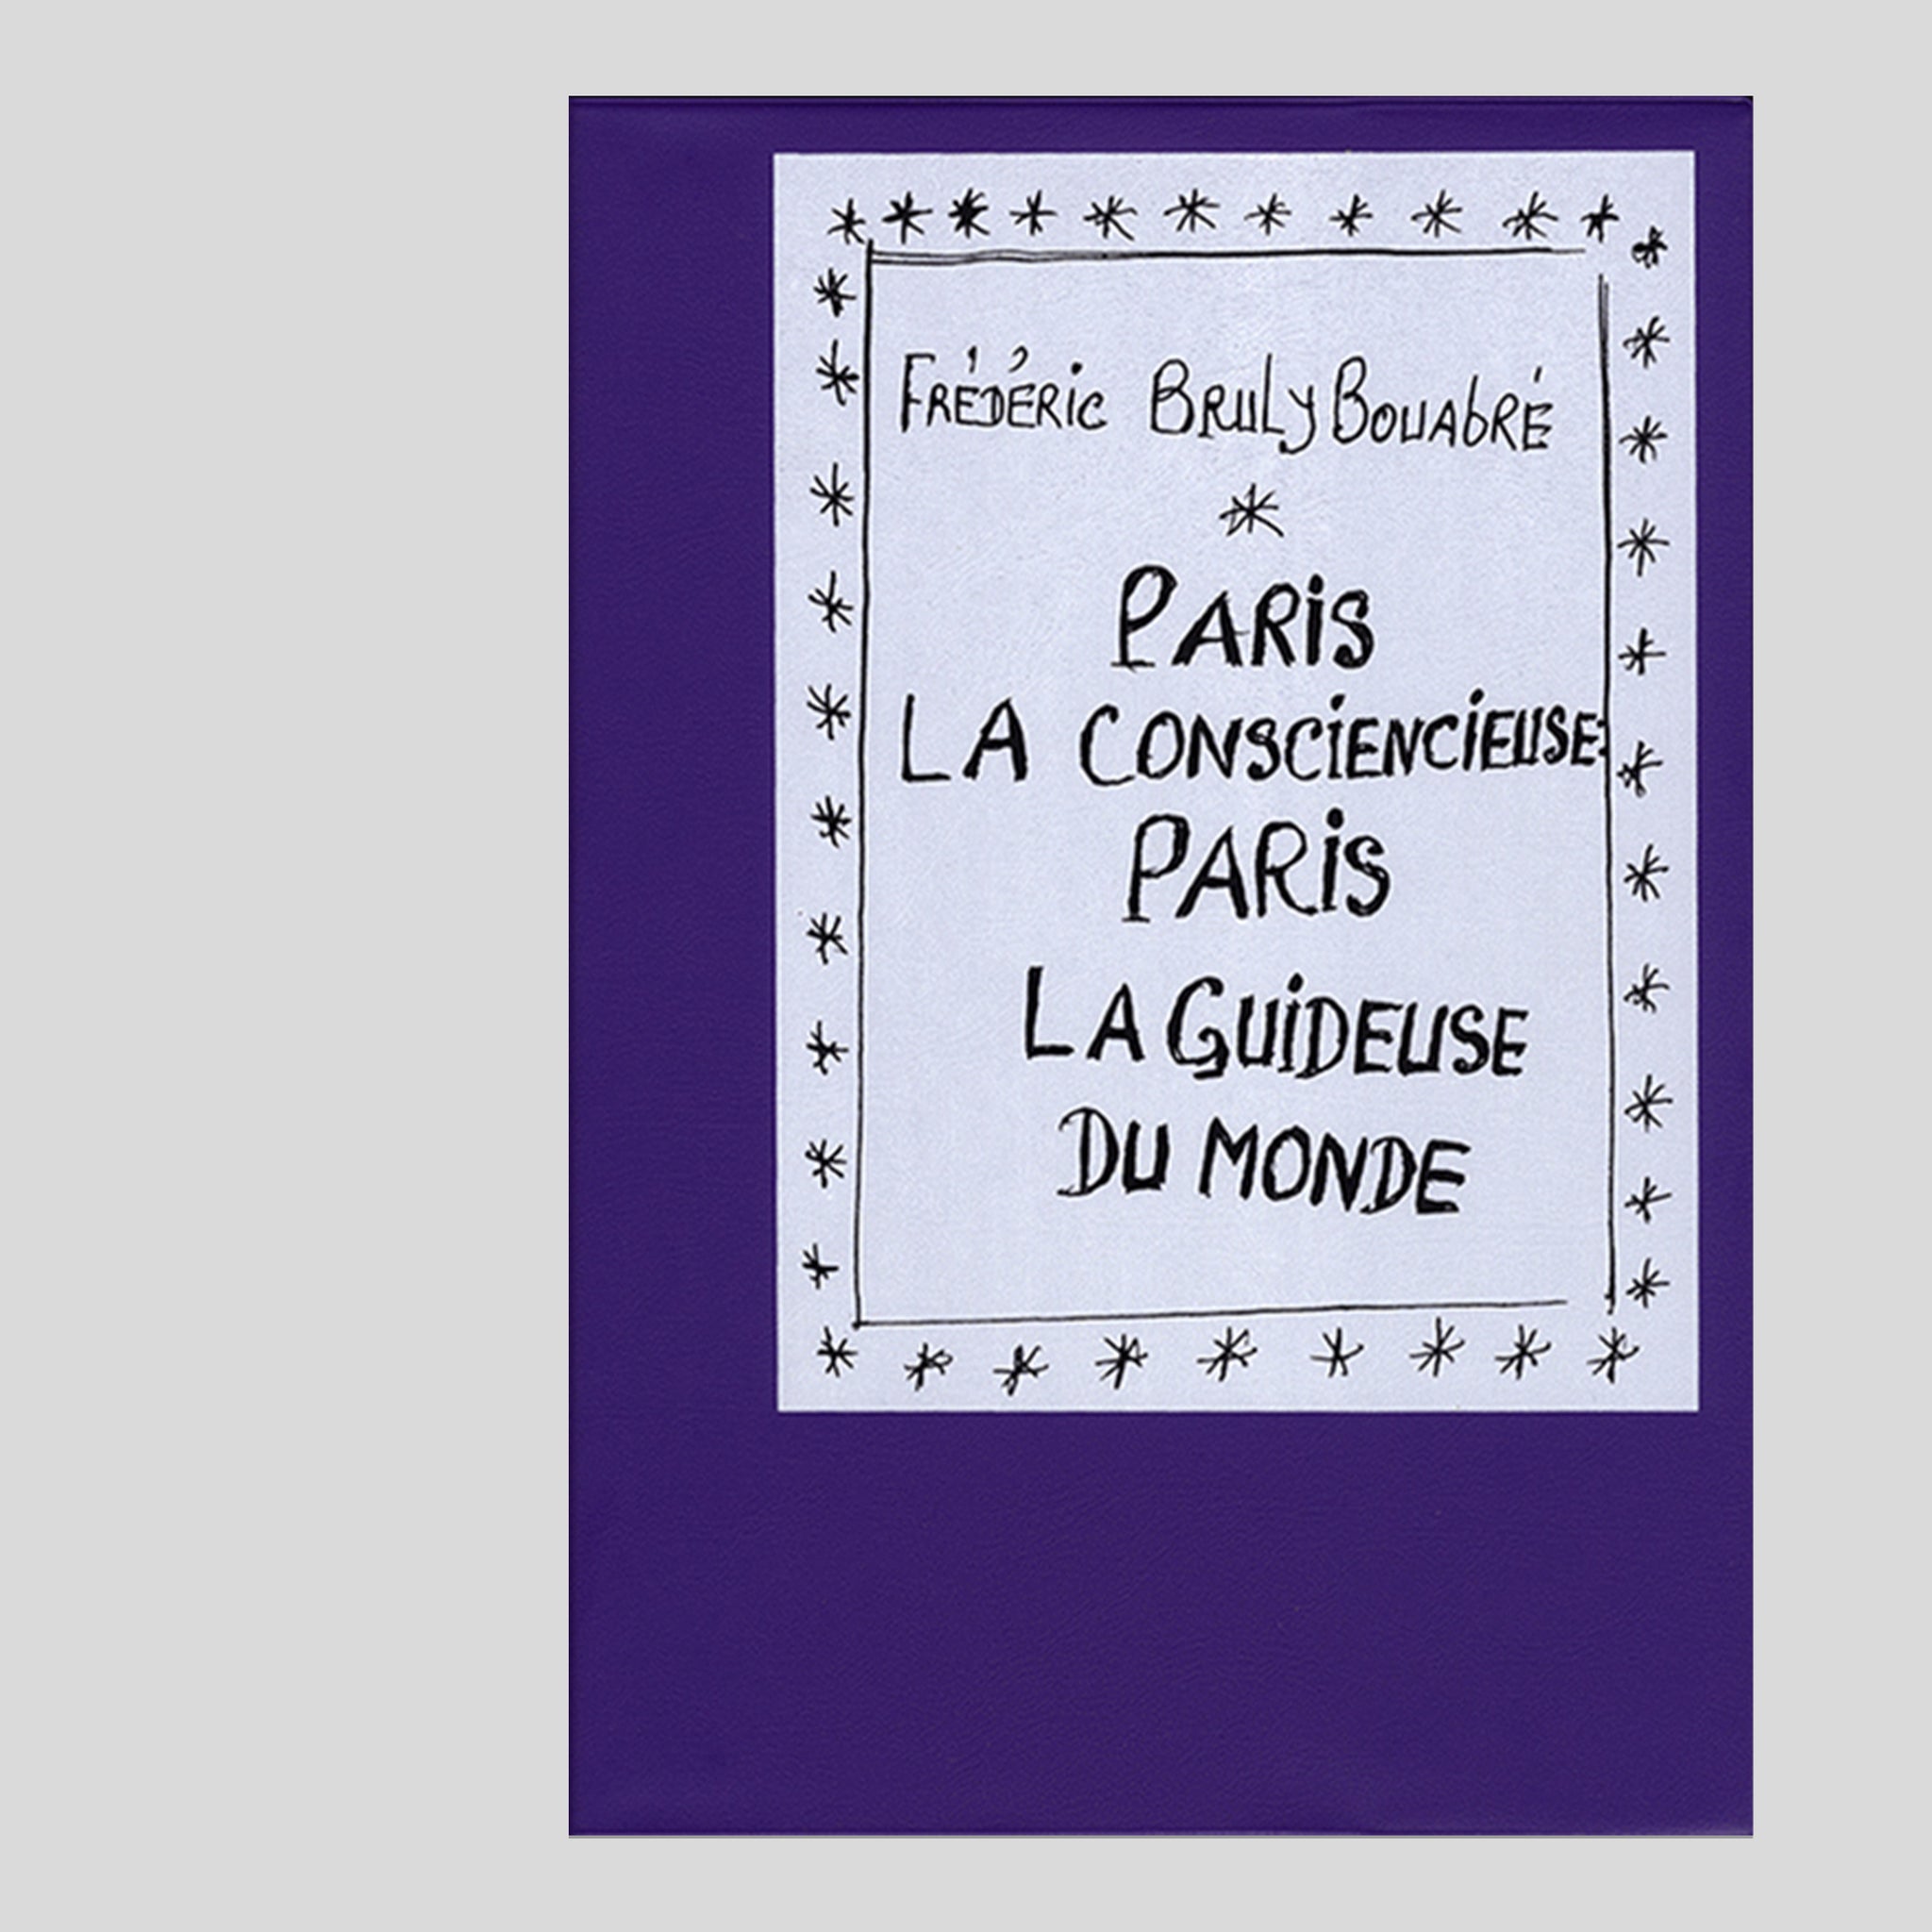 Paris la consciencieuse : Paris la guideuse du monde - Frédéric Bruly Bouabré